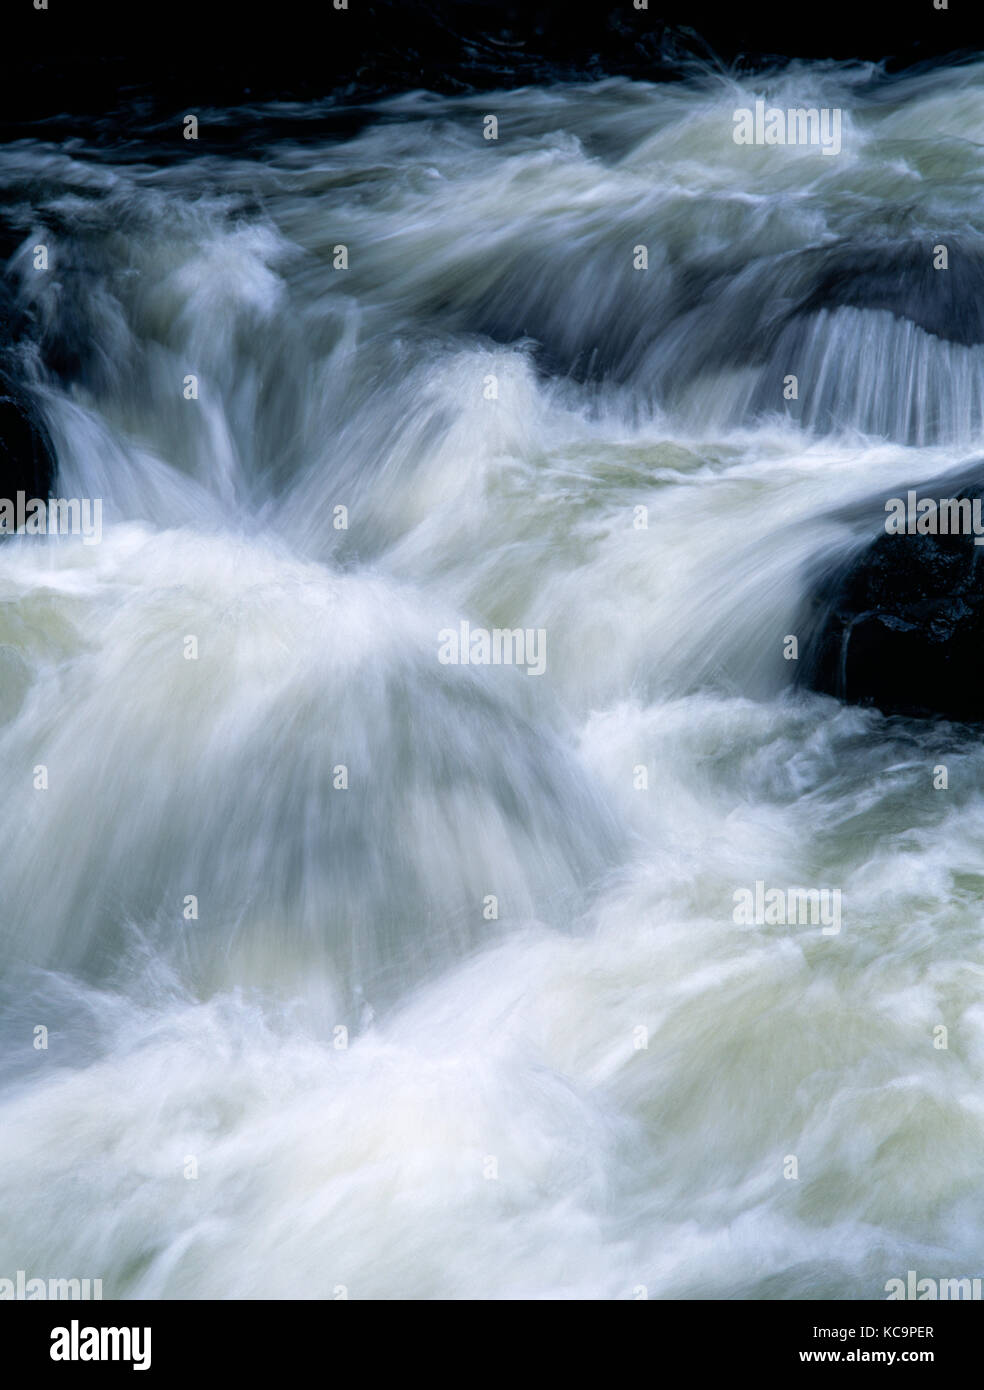 Afon Llugwy, oben Swallow Falls, in der Nähe von Betws y Coed, Conwy, North Wales. Fluss in Überflutung nach starkem Regen, fließende über felsige Flussbett. Stockfoto